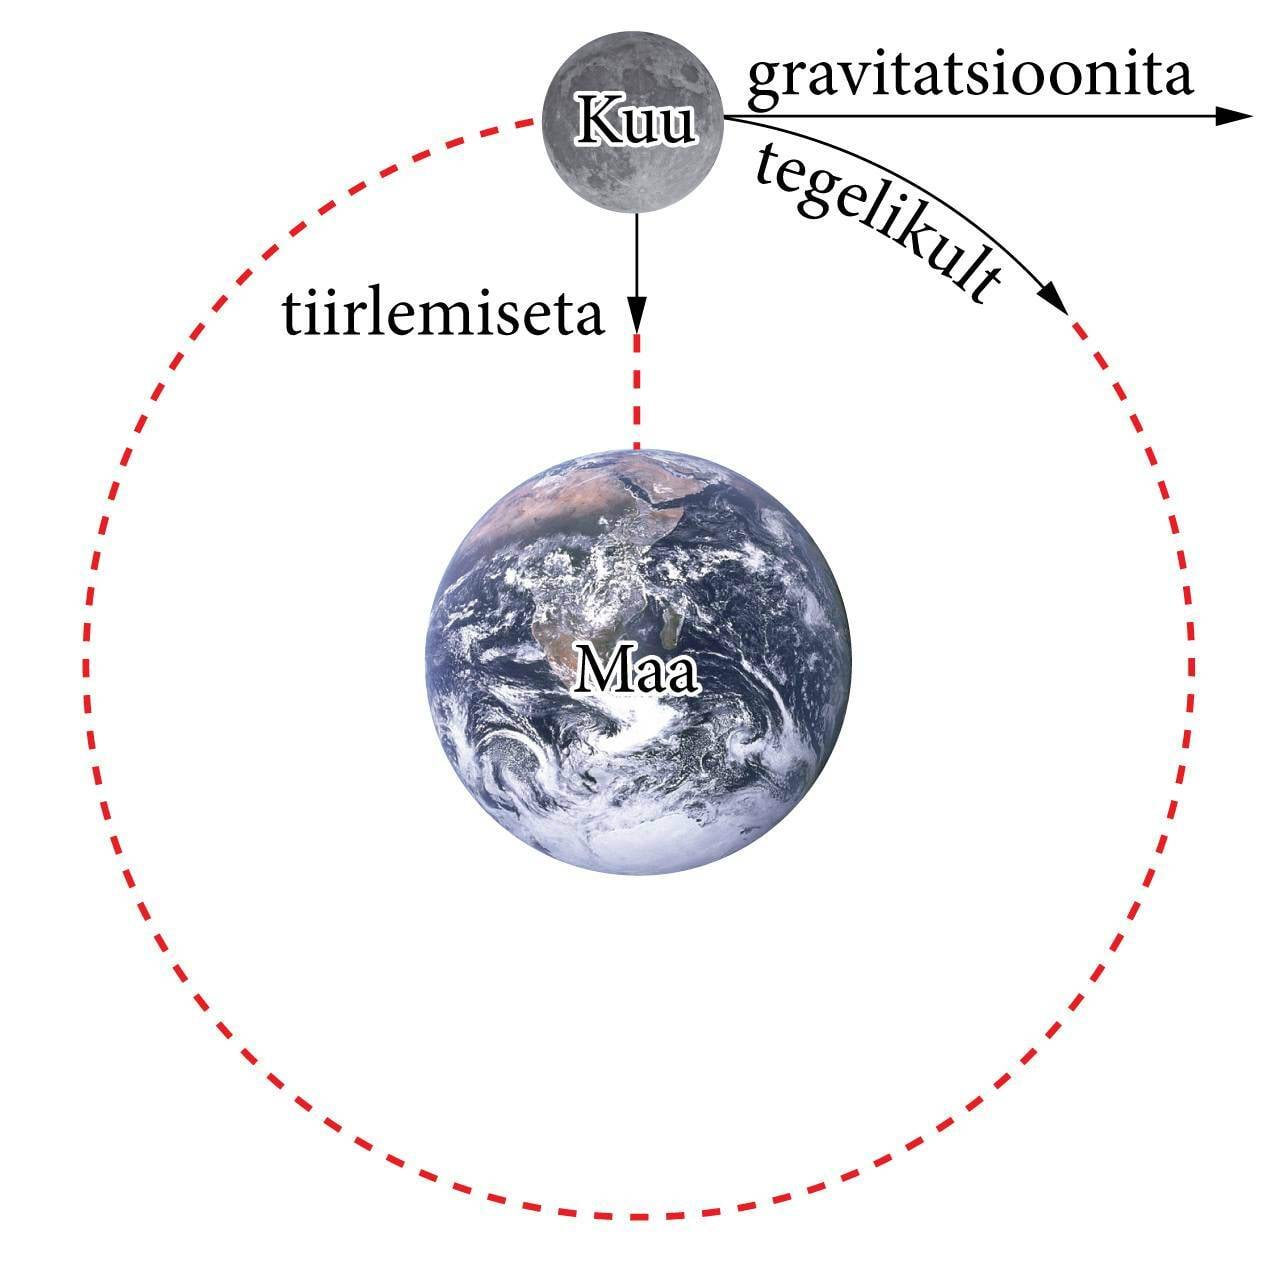 Kuu liikumine Maa gravitatsiooniväljas